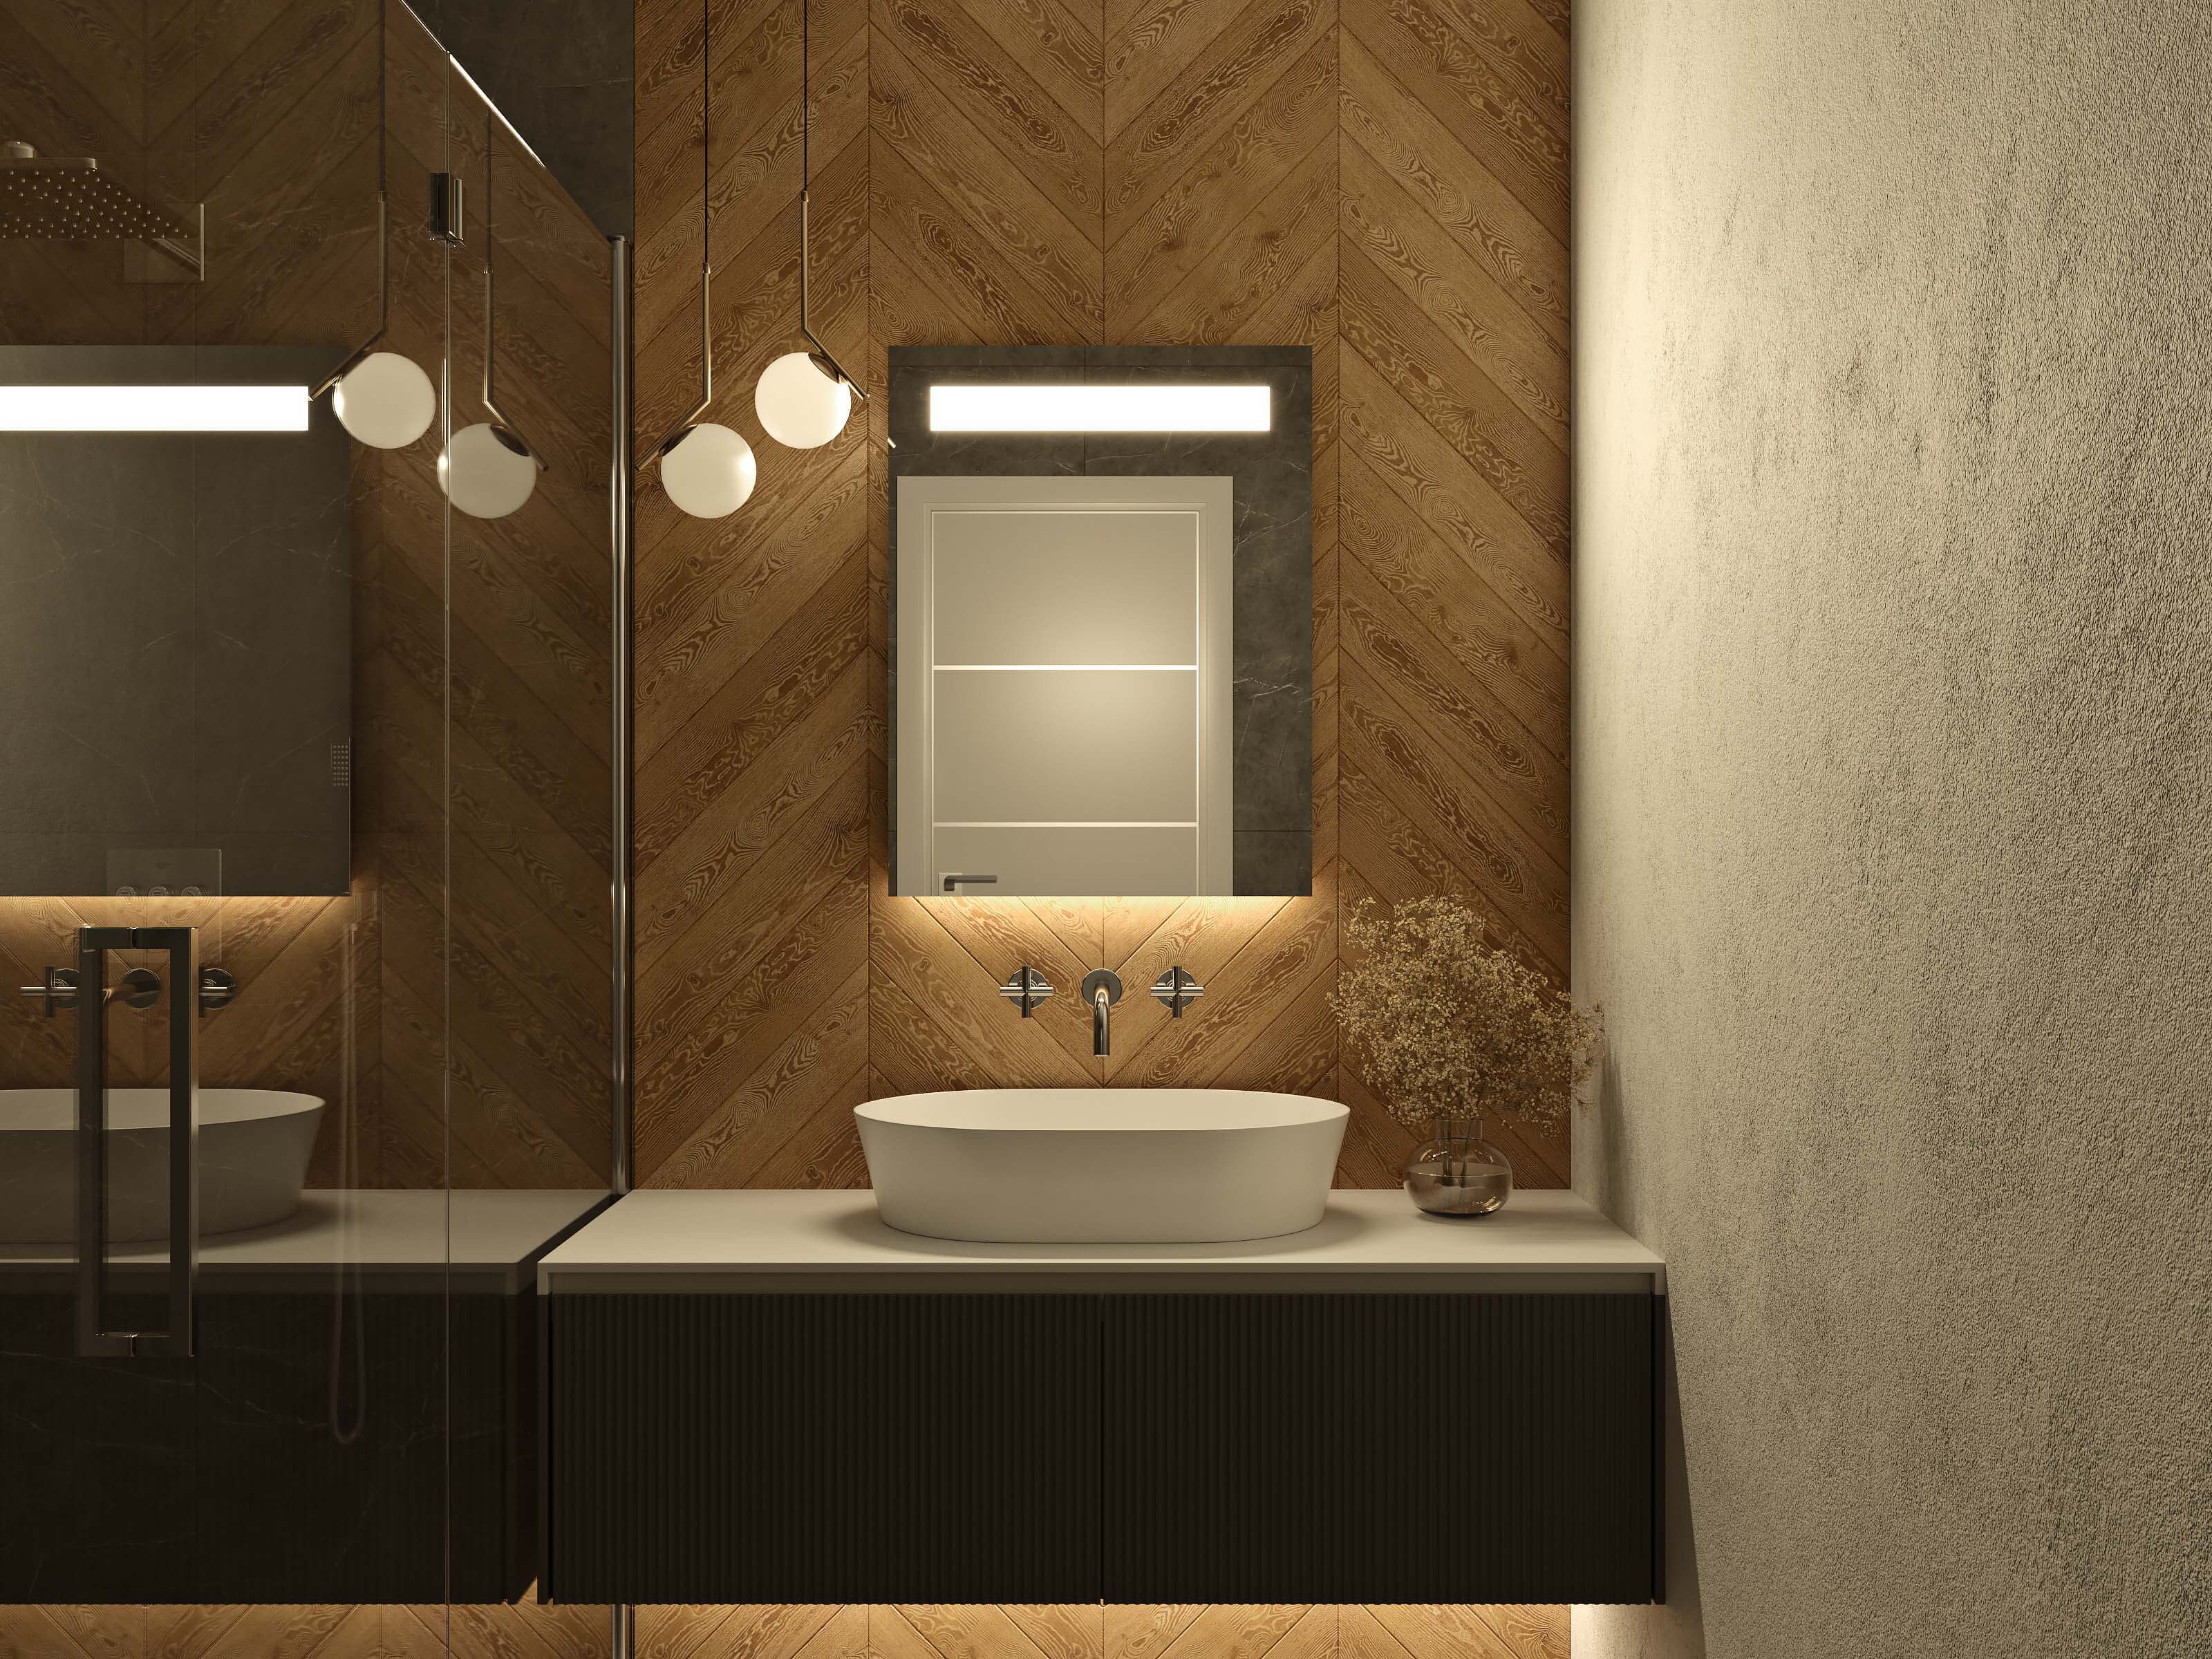 AMO LED-Badspiegel quadratisch mit warmweißer Beleuchtung oben und Waschtischbeleuchtung unten